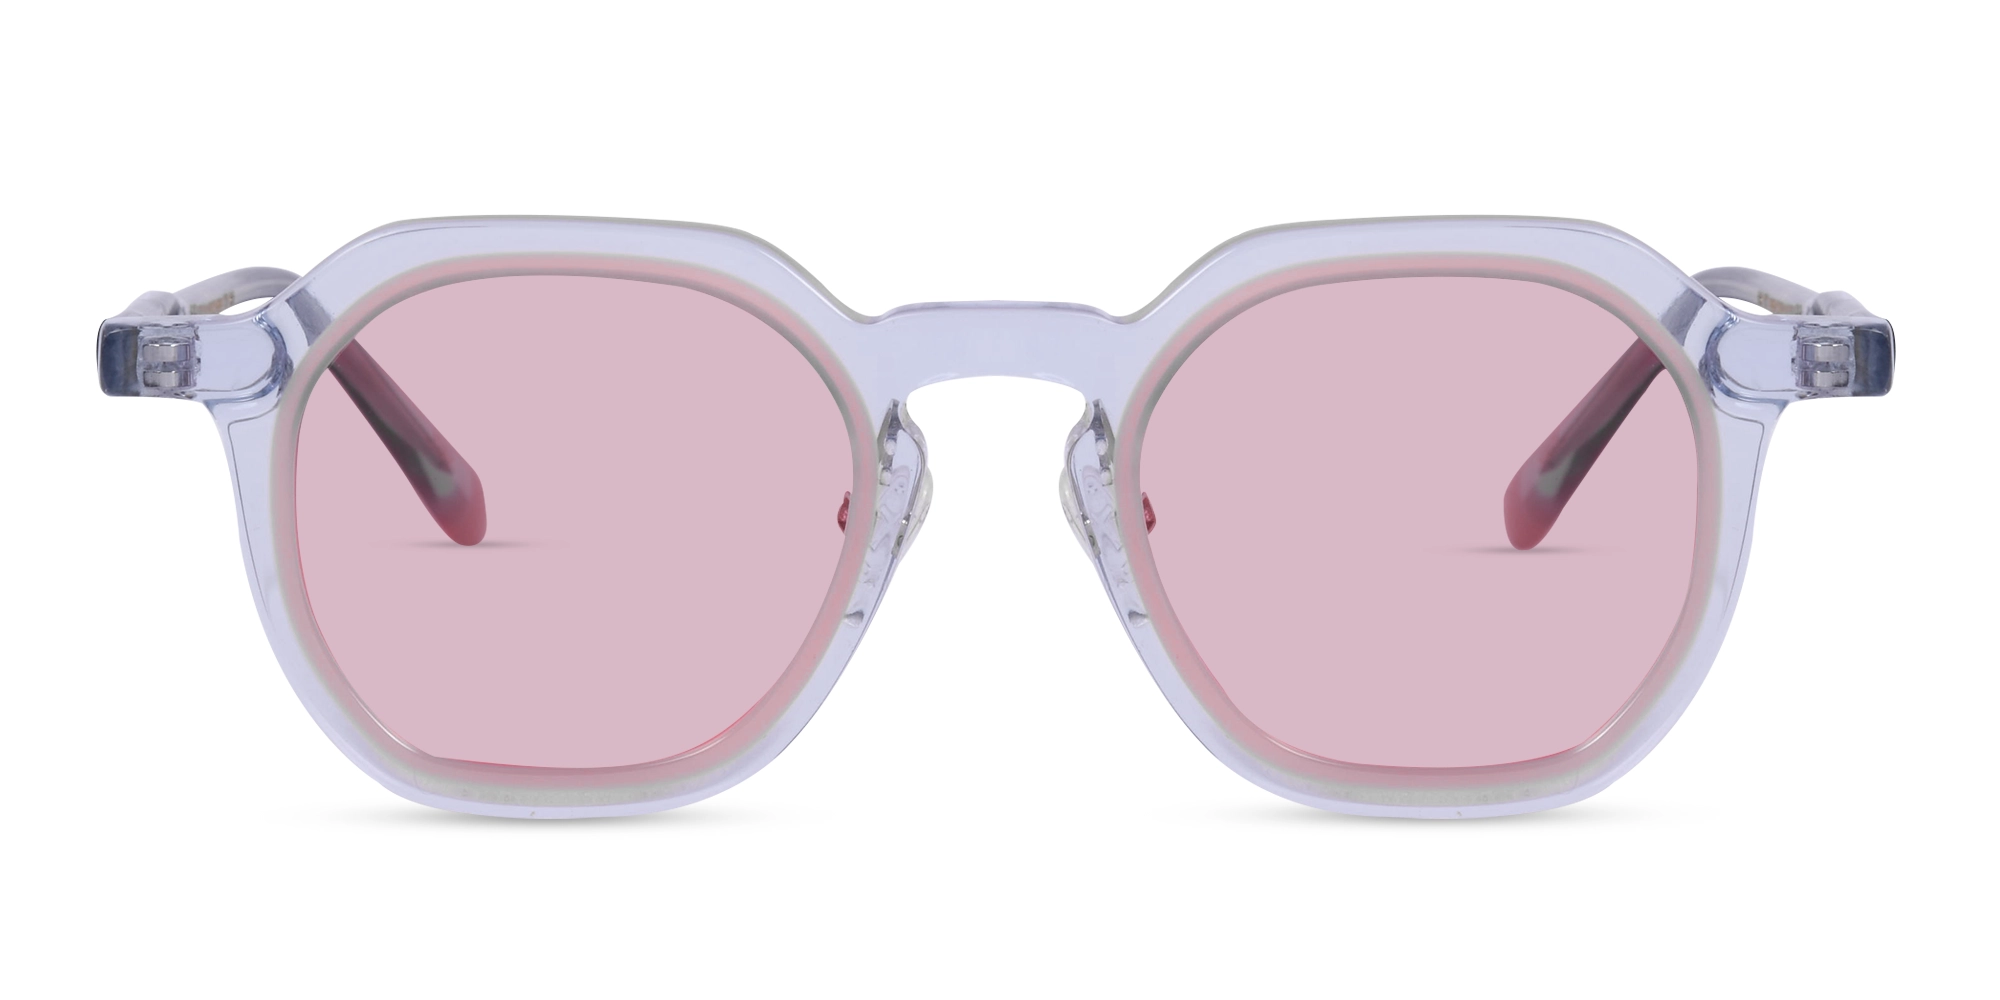 Designer Geometric Frame Glasses